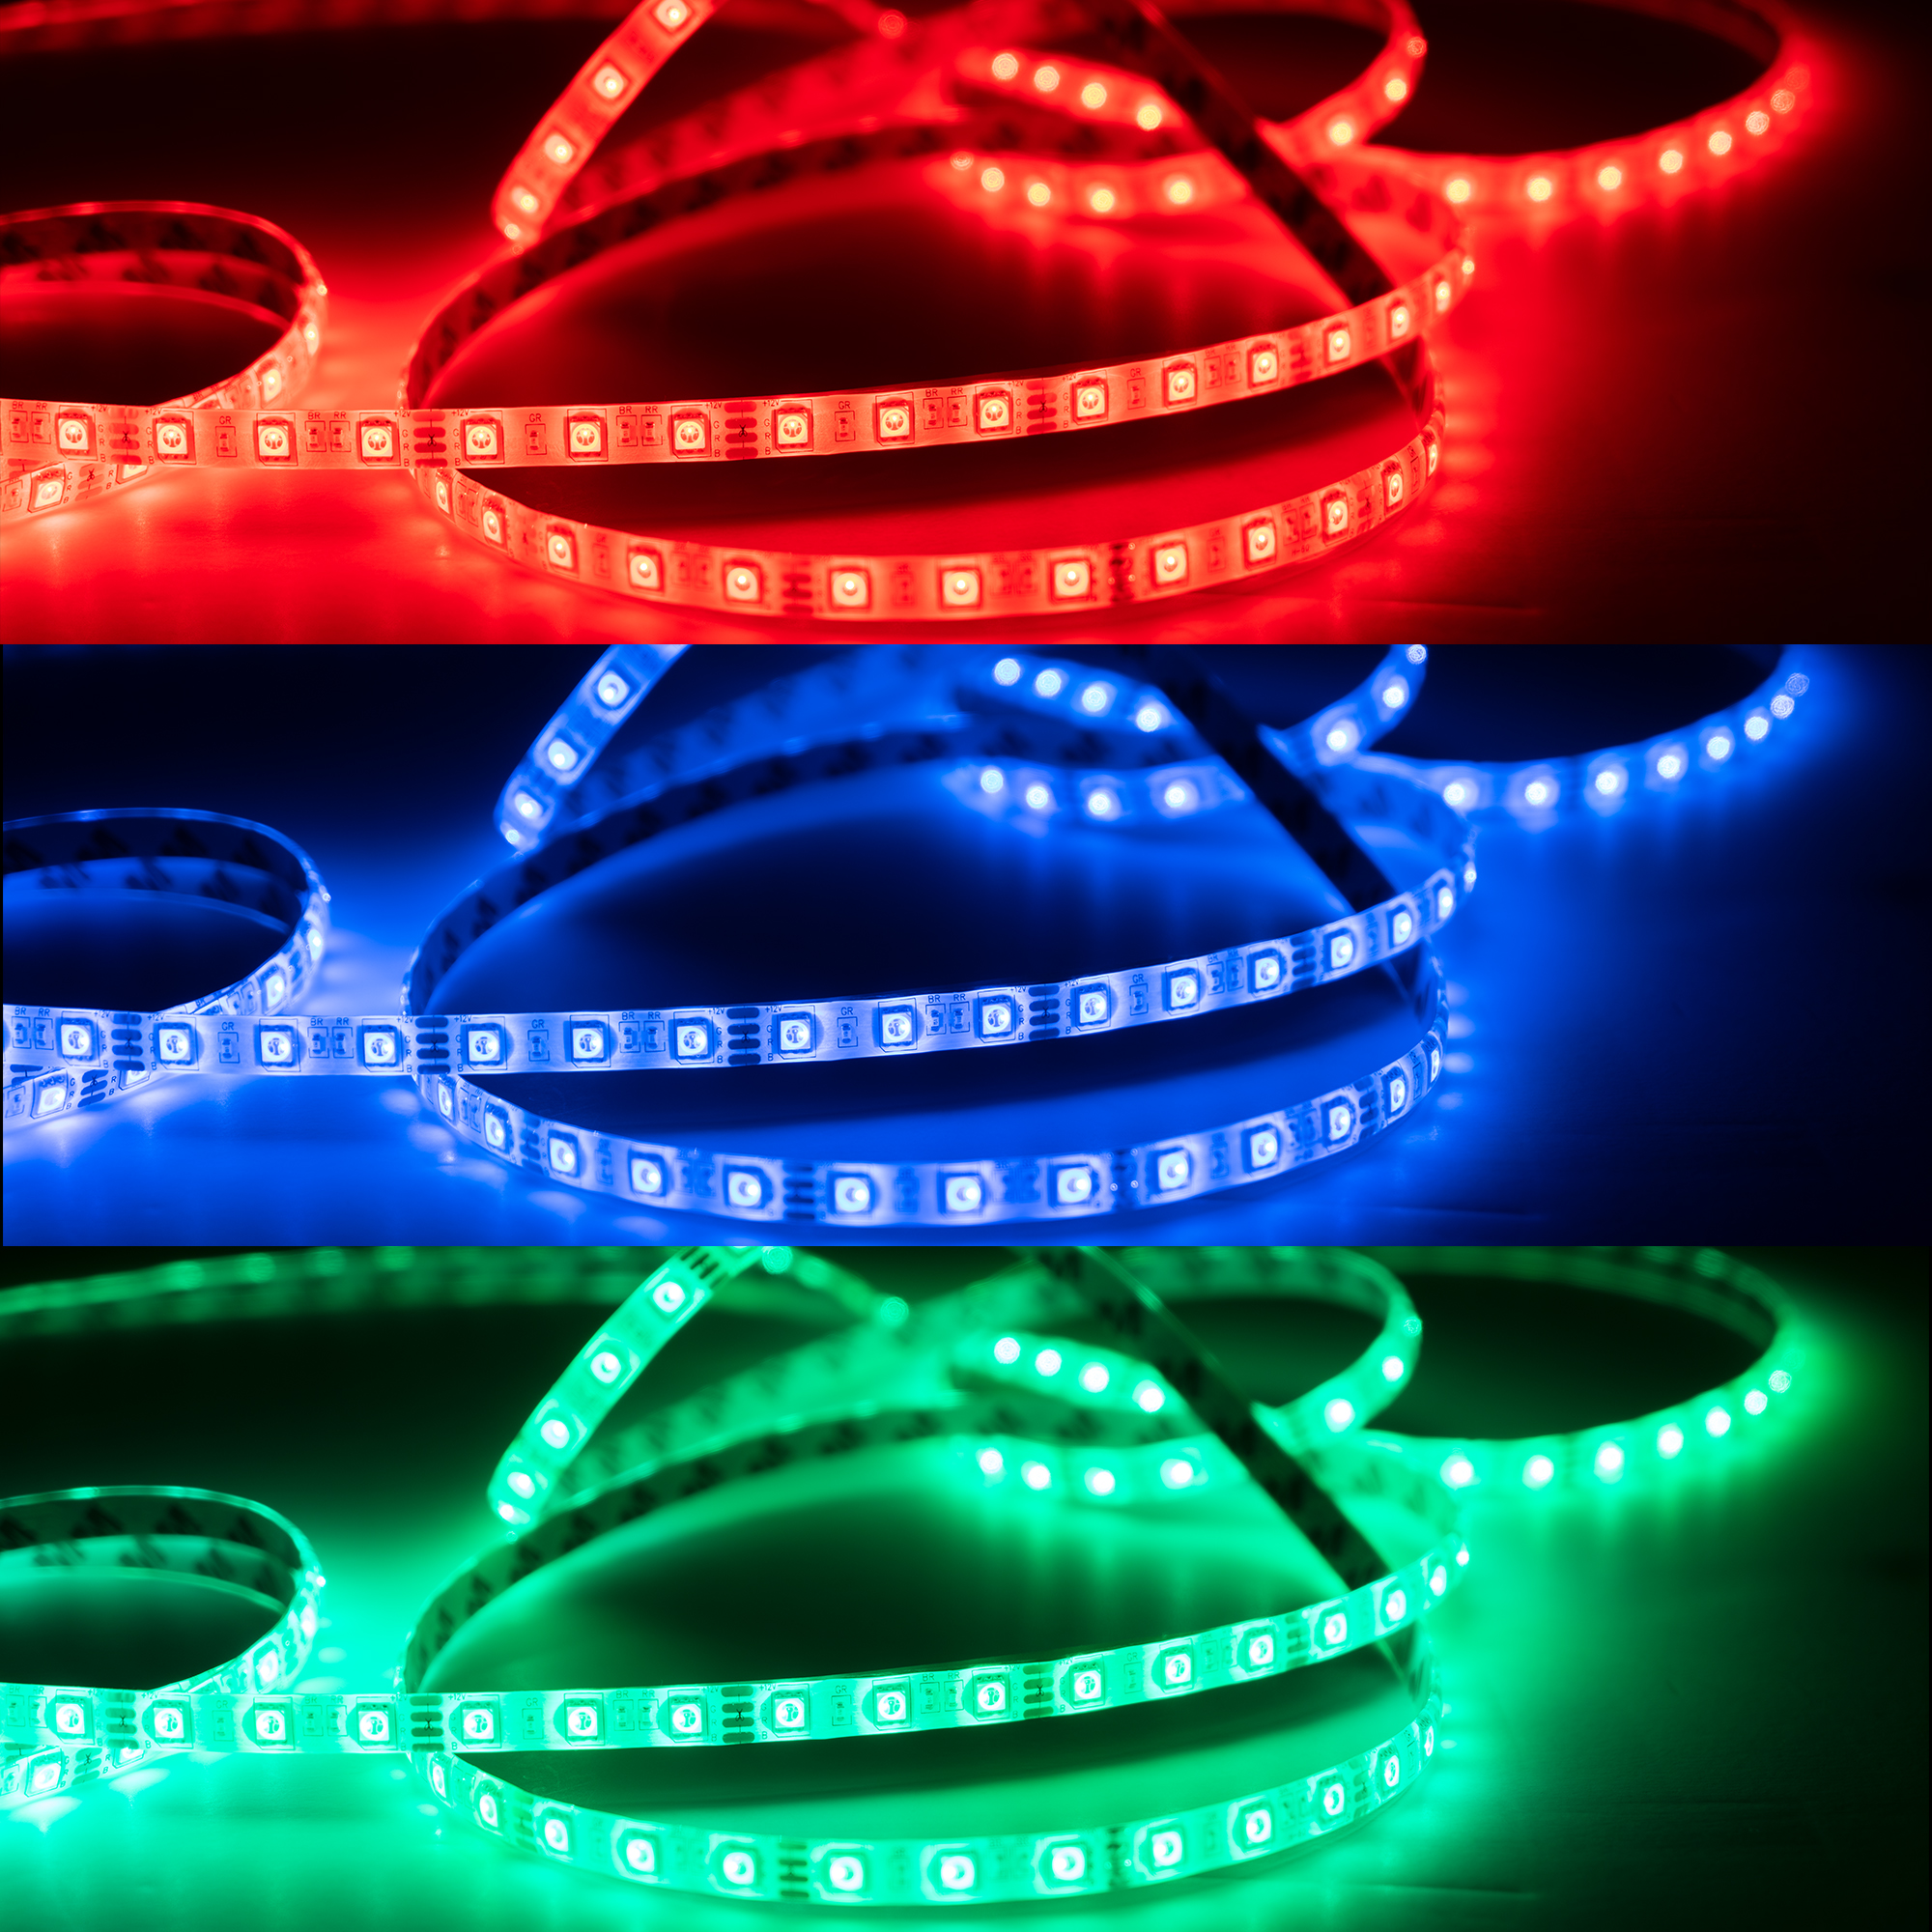 8mm LED Tape Lights 300LED Lights 16½ft - Multicolor